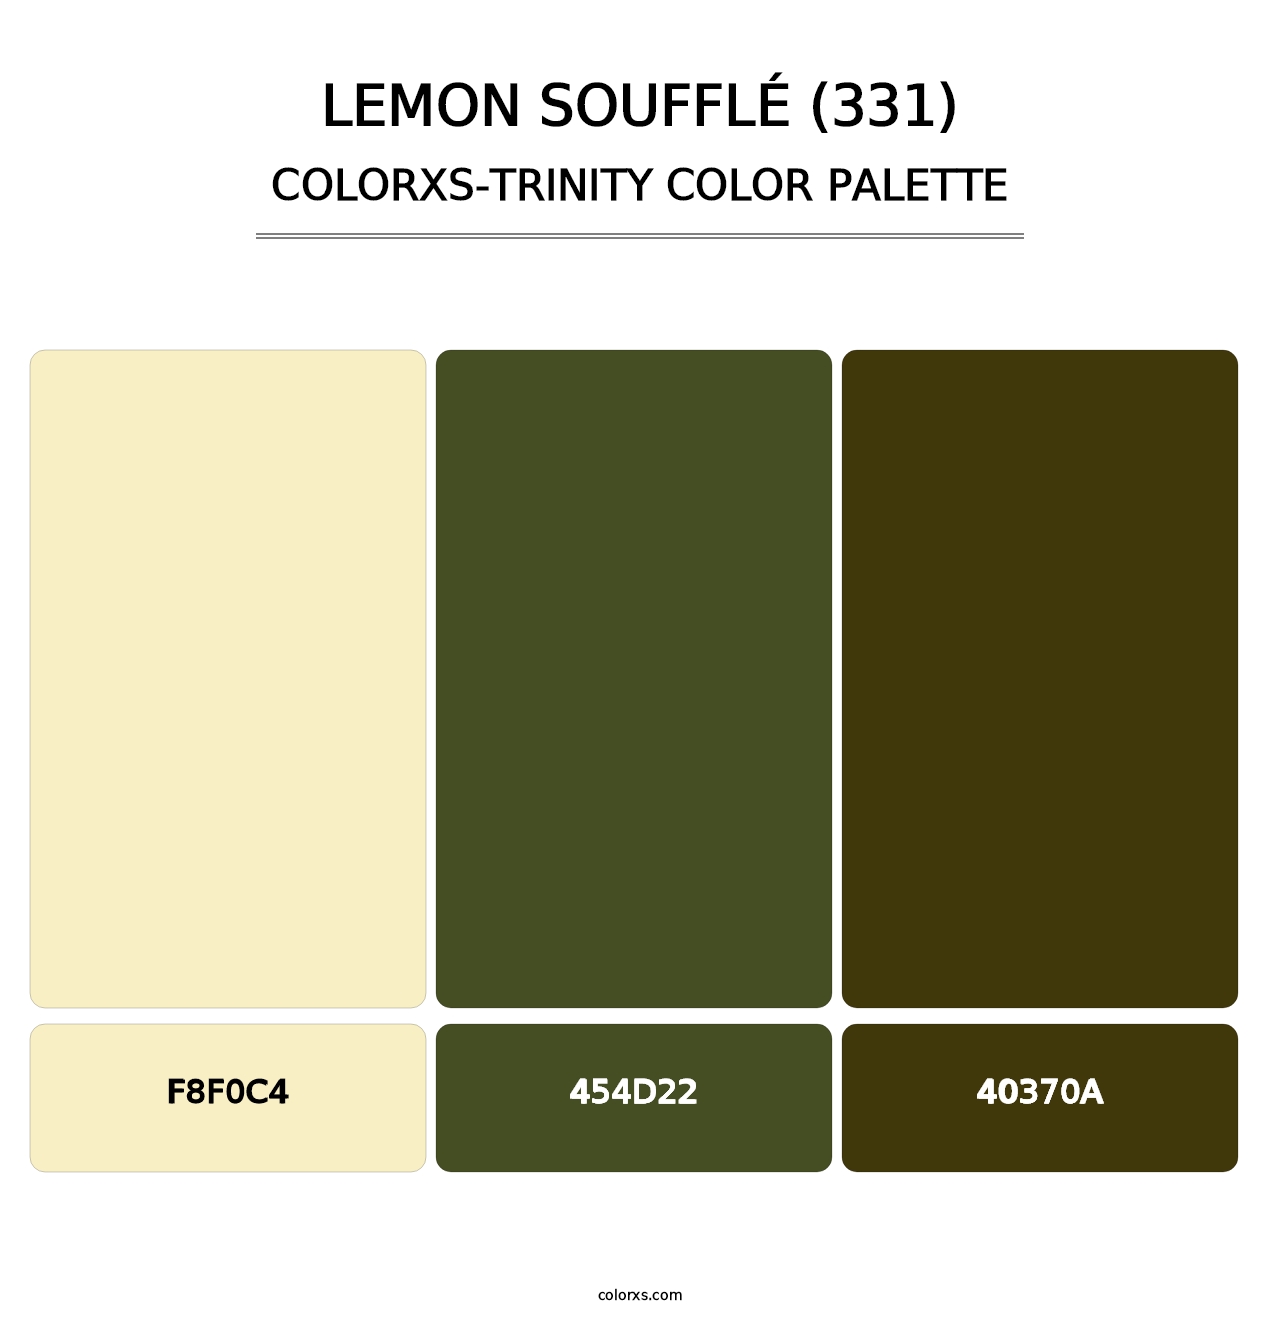 Lemon Soufflé (331) - Colorxs Trinity Palette